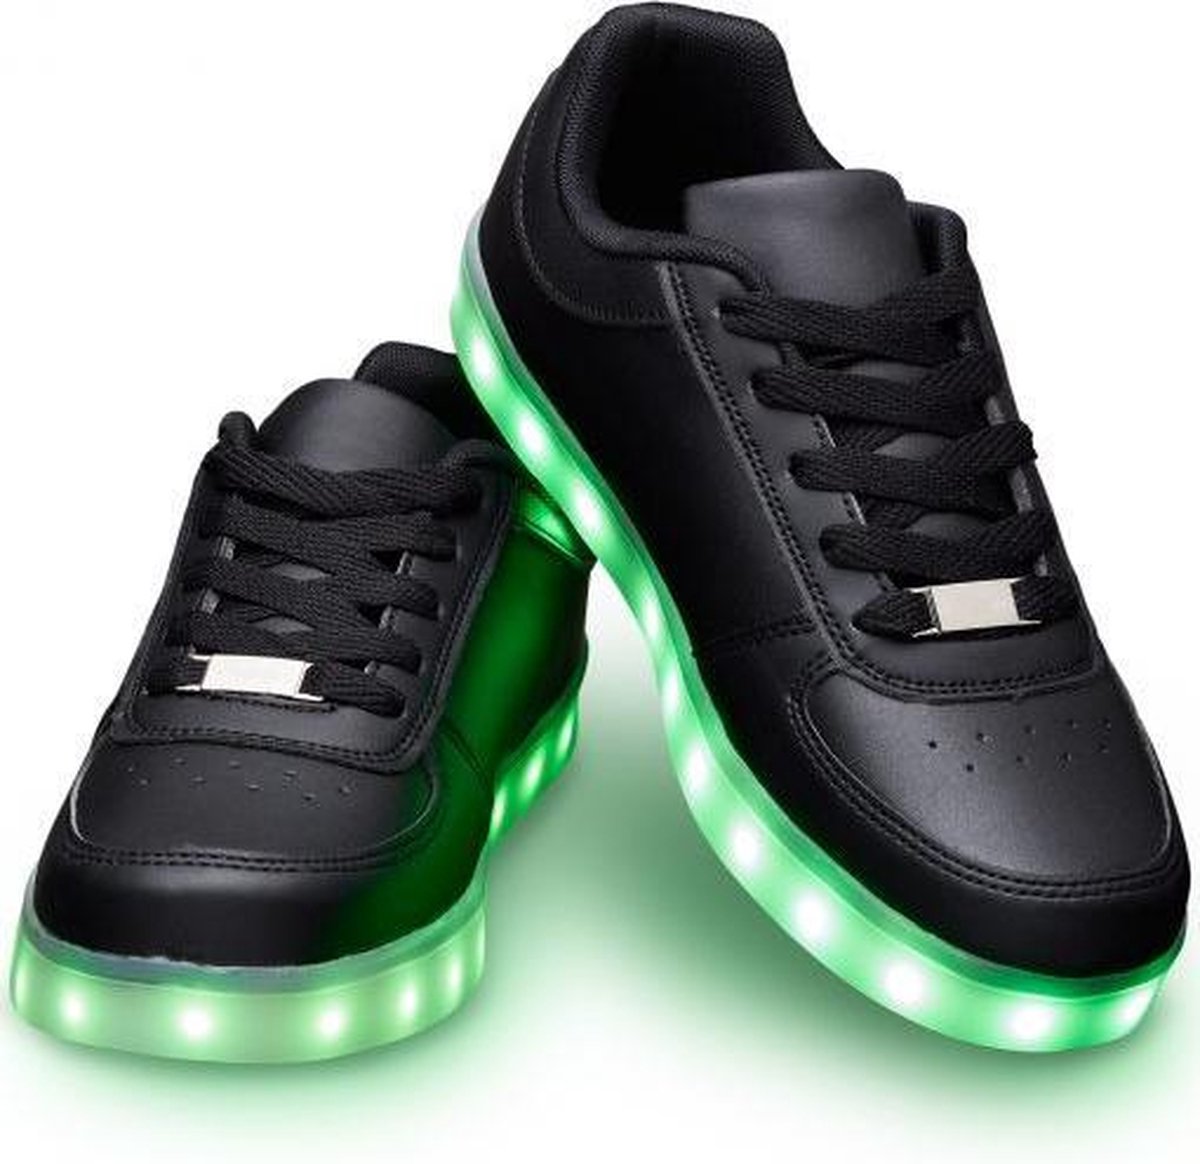 Schoenen met lichtjes - Lichtgevende led schoenen - Zwart - Maat 41